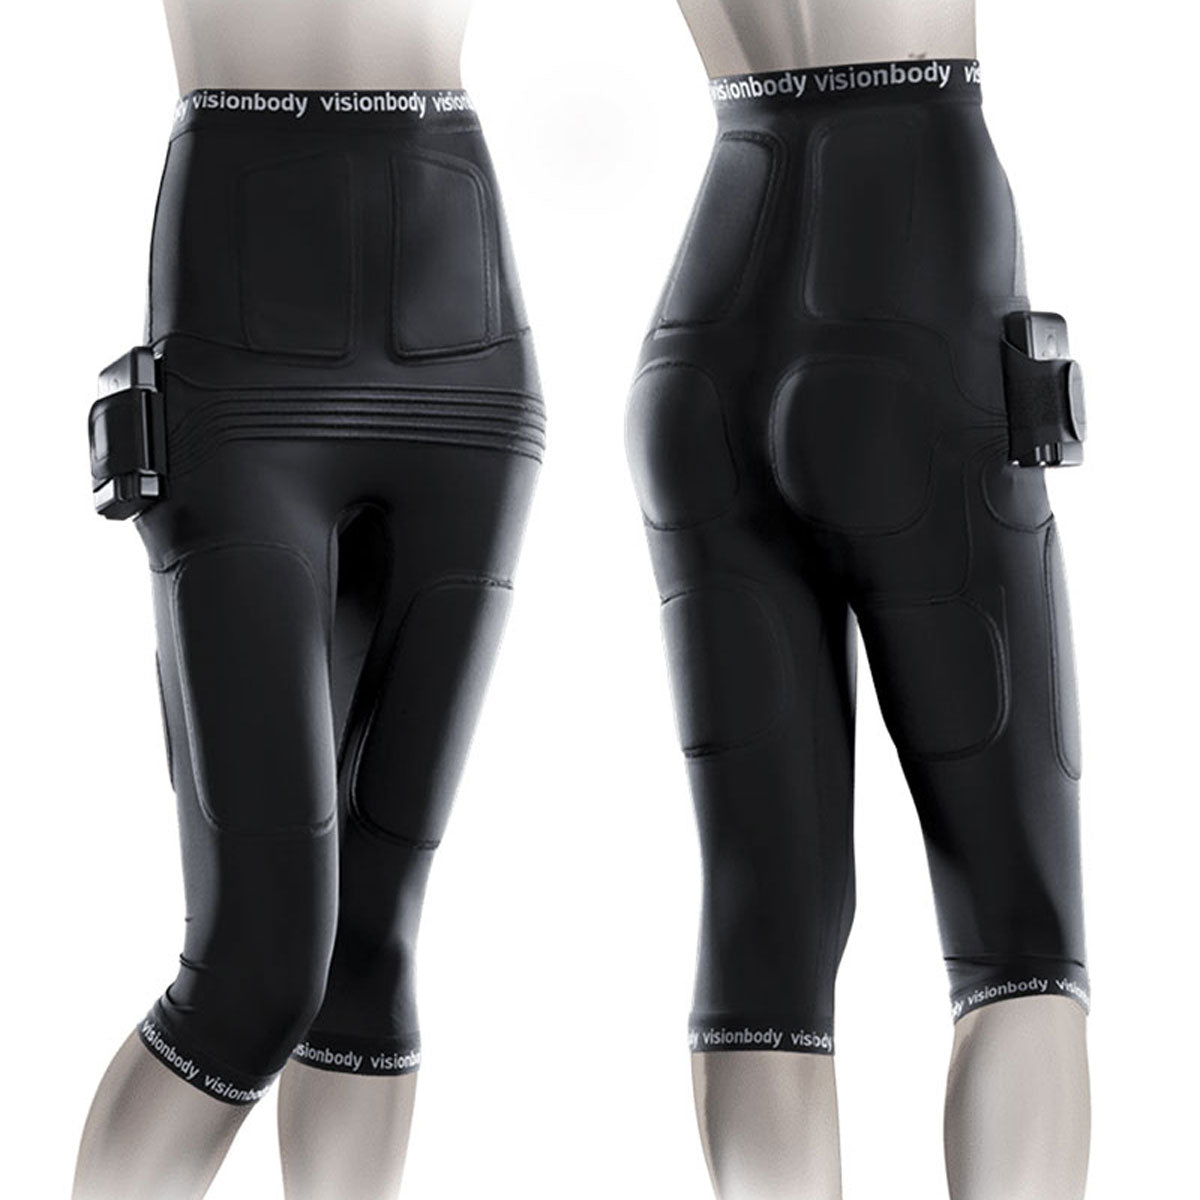 Anti-cellulite leggings black Cette | La Redoute